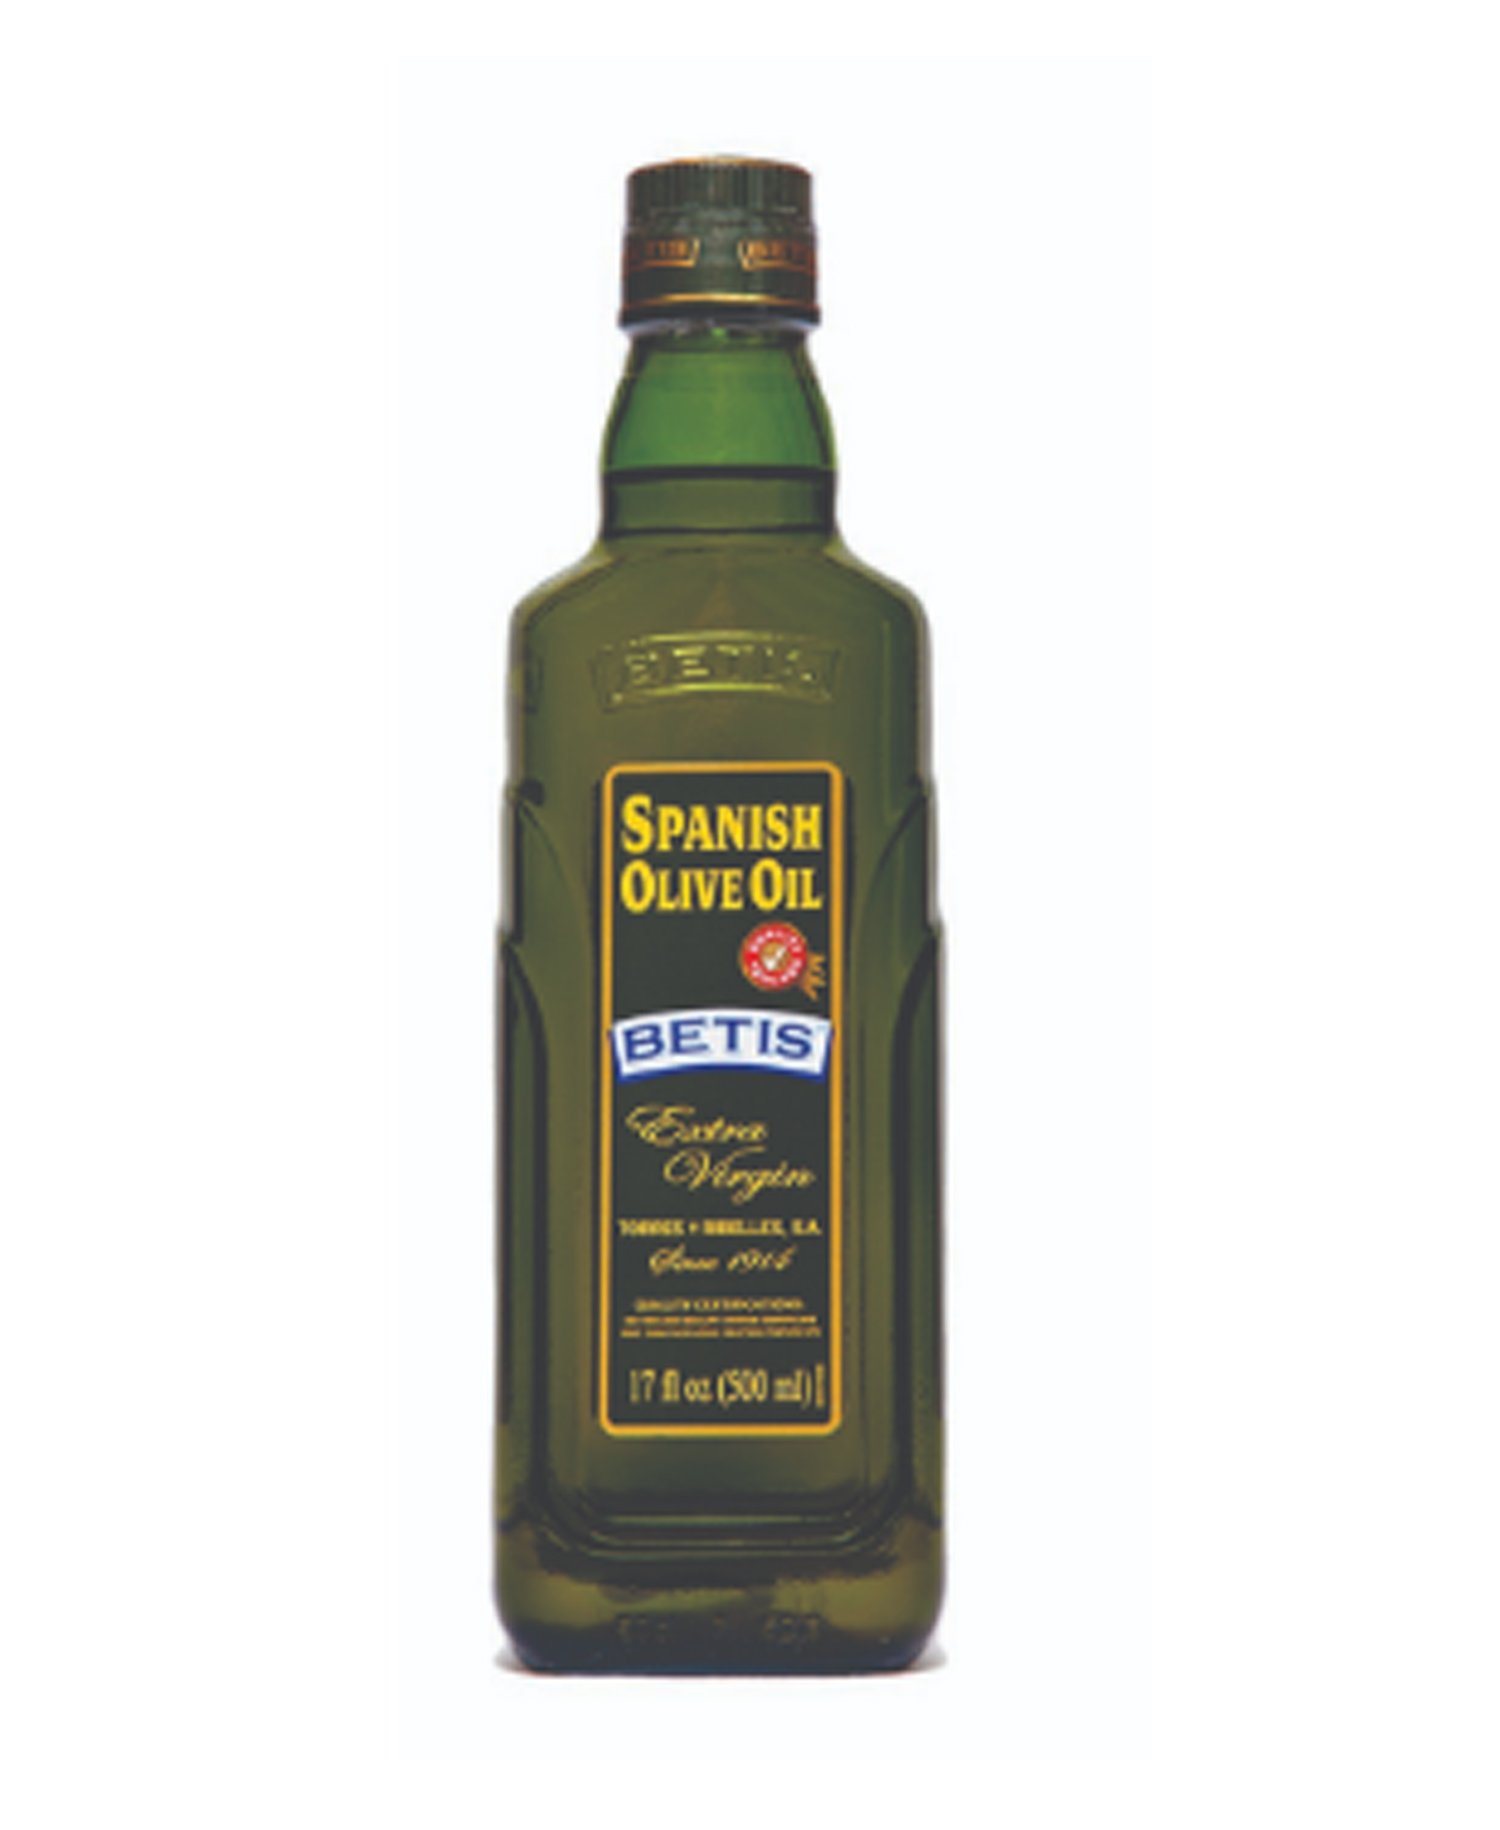 Betis Extra Virgin Spanish Olive Oil 4.25 FL oz